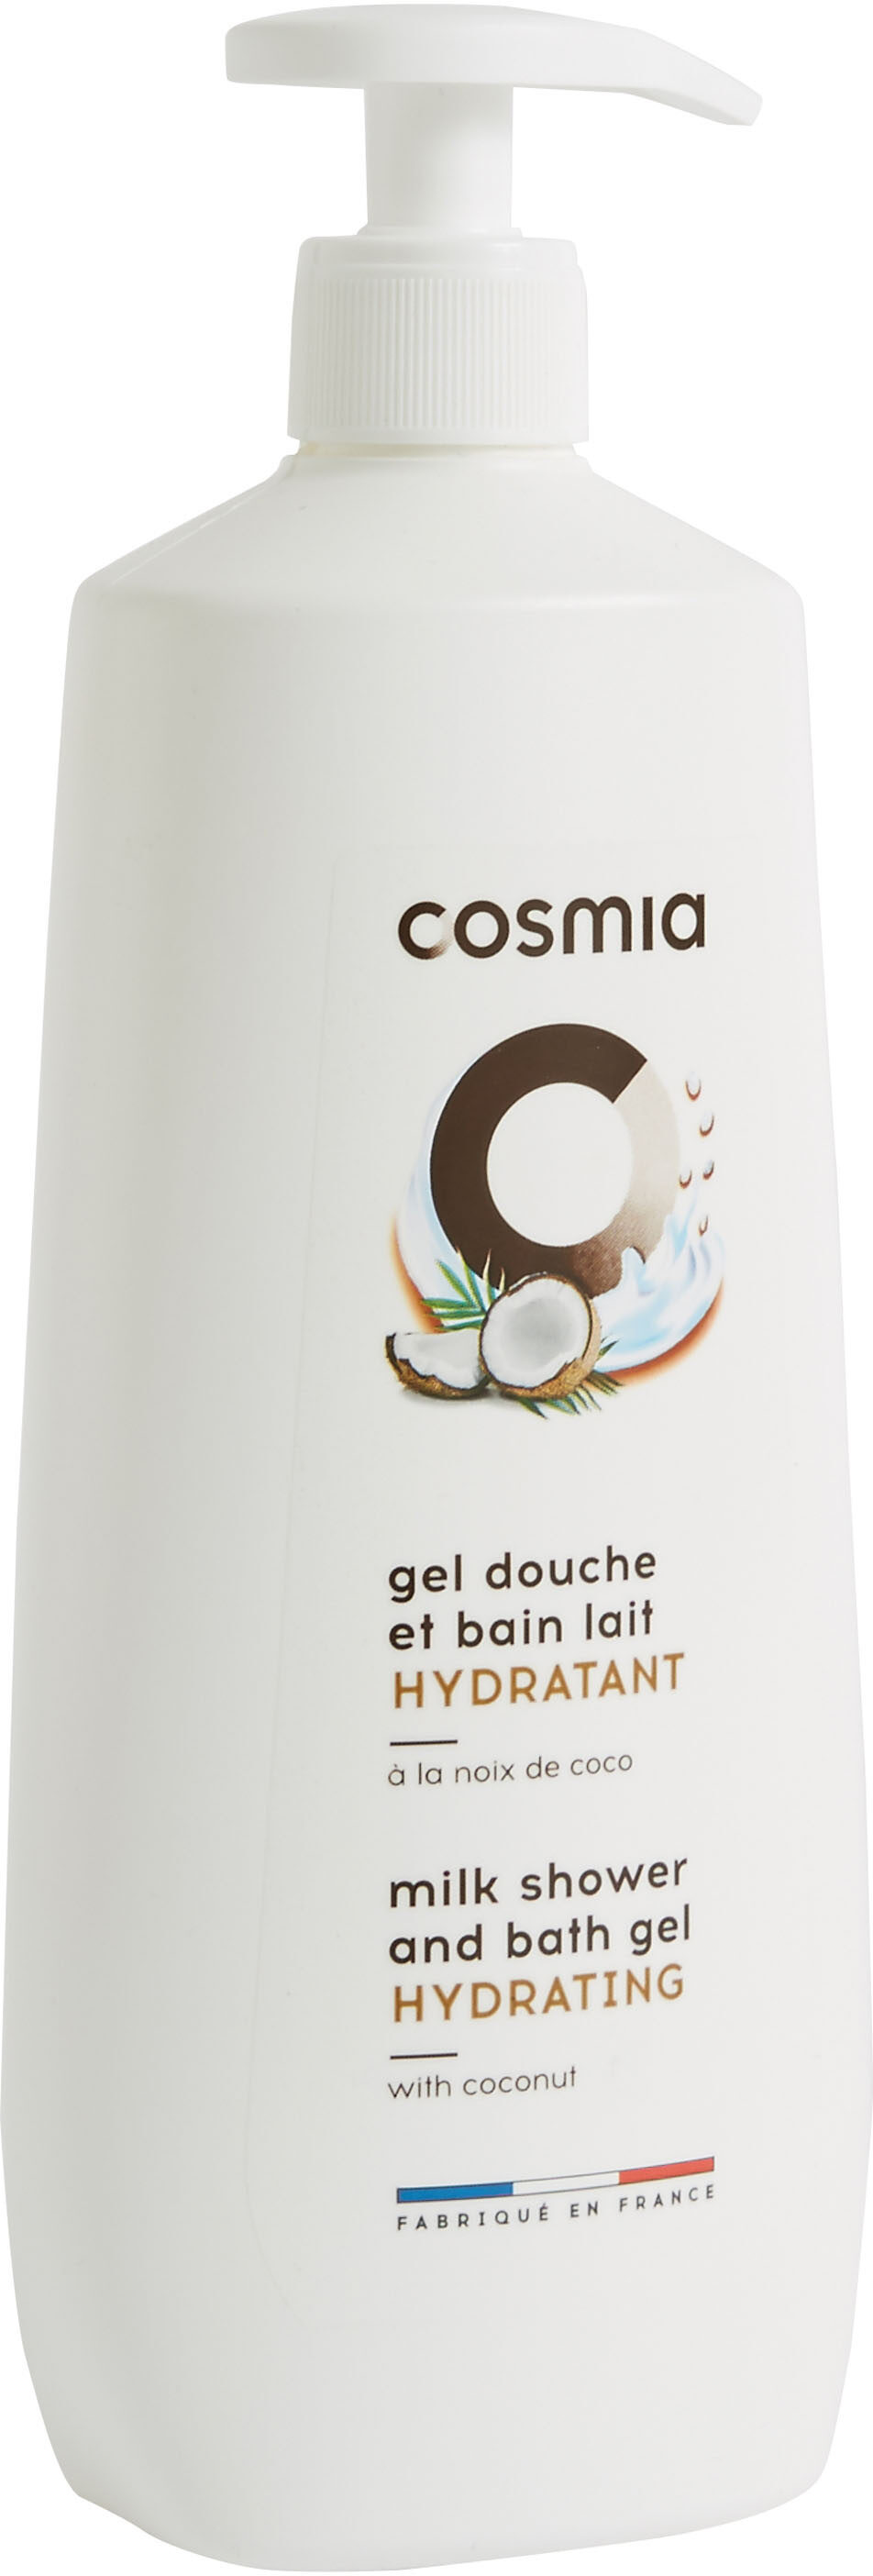 Cosmia gel douche et bain lait hydratant a la noix de coco - Produkt - fr